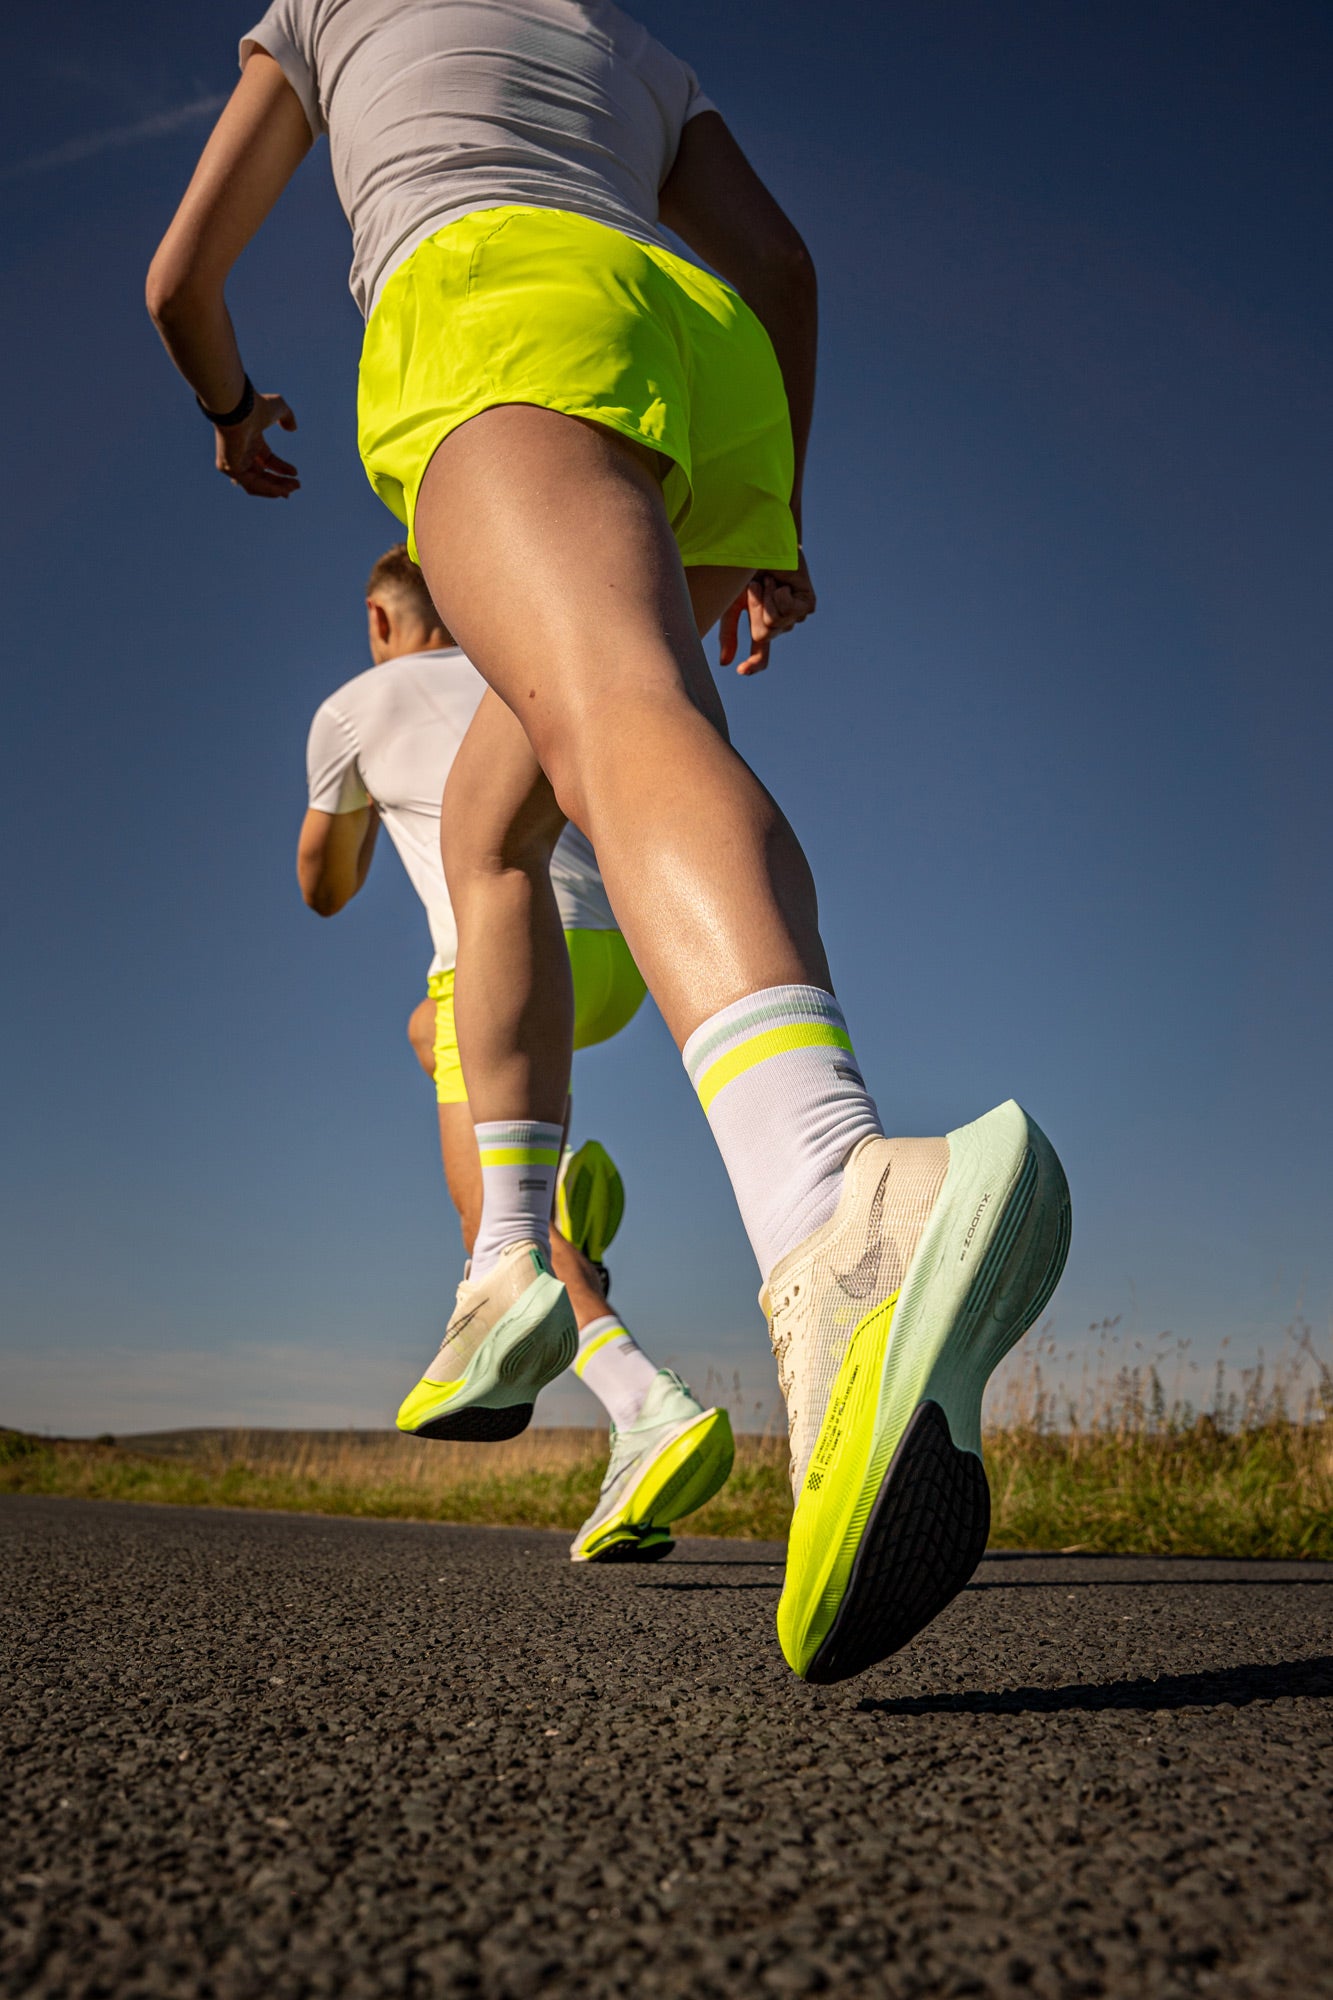 Nike mint running socks on runners